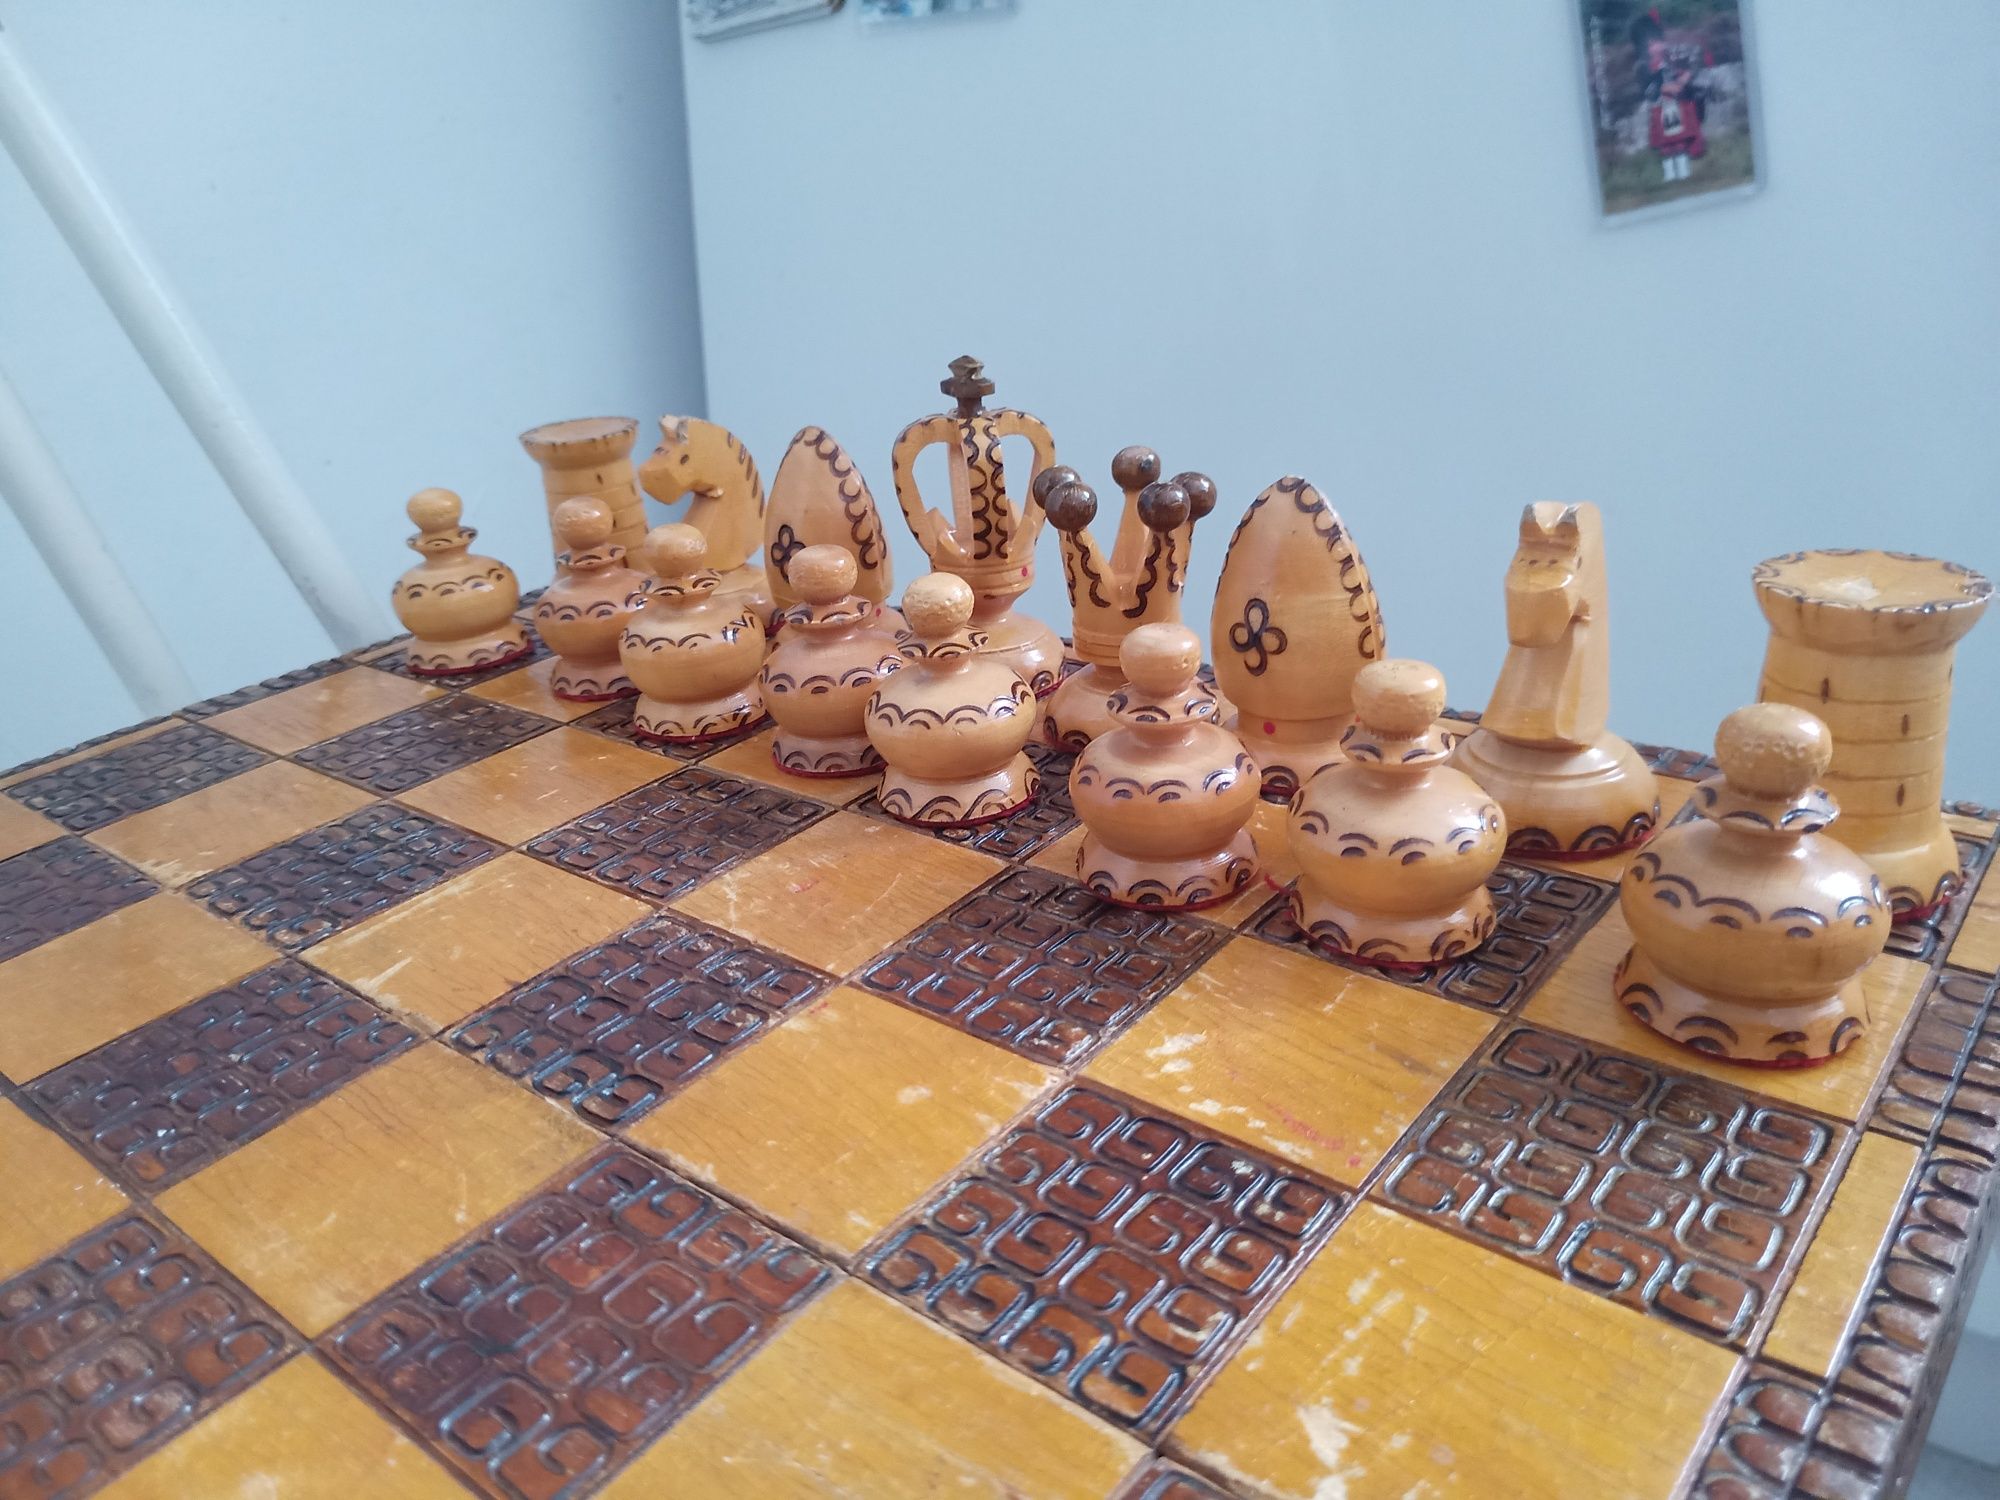 Stare drewniane szachy